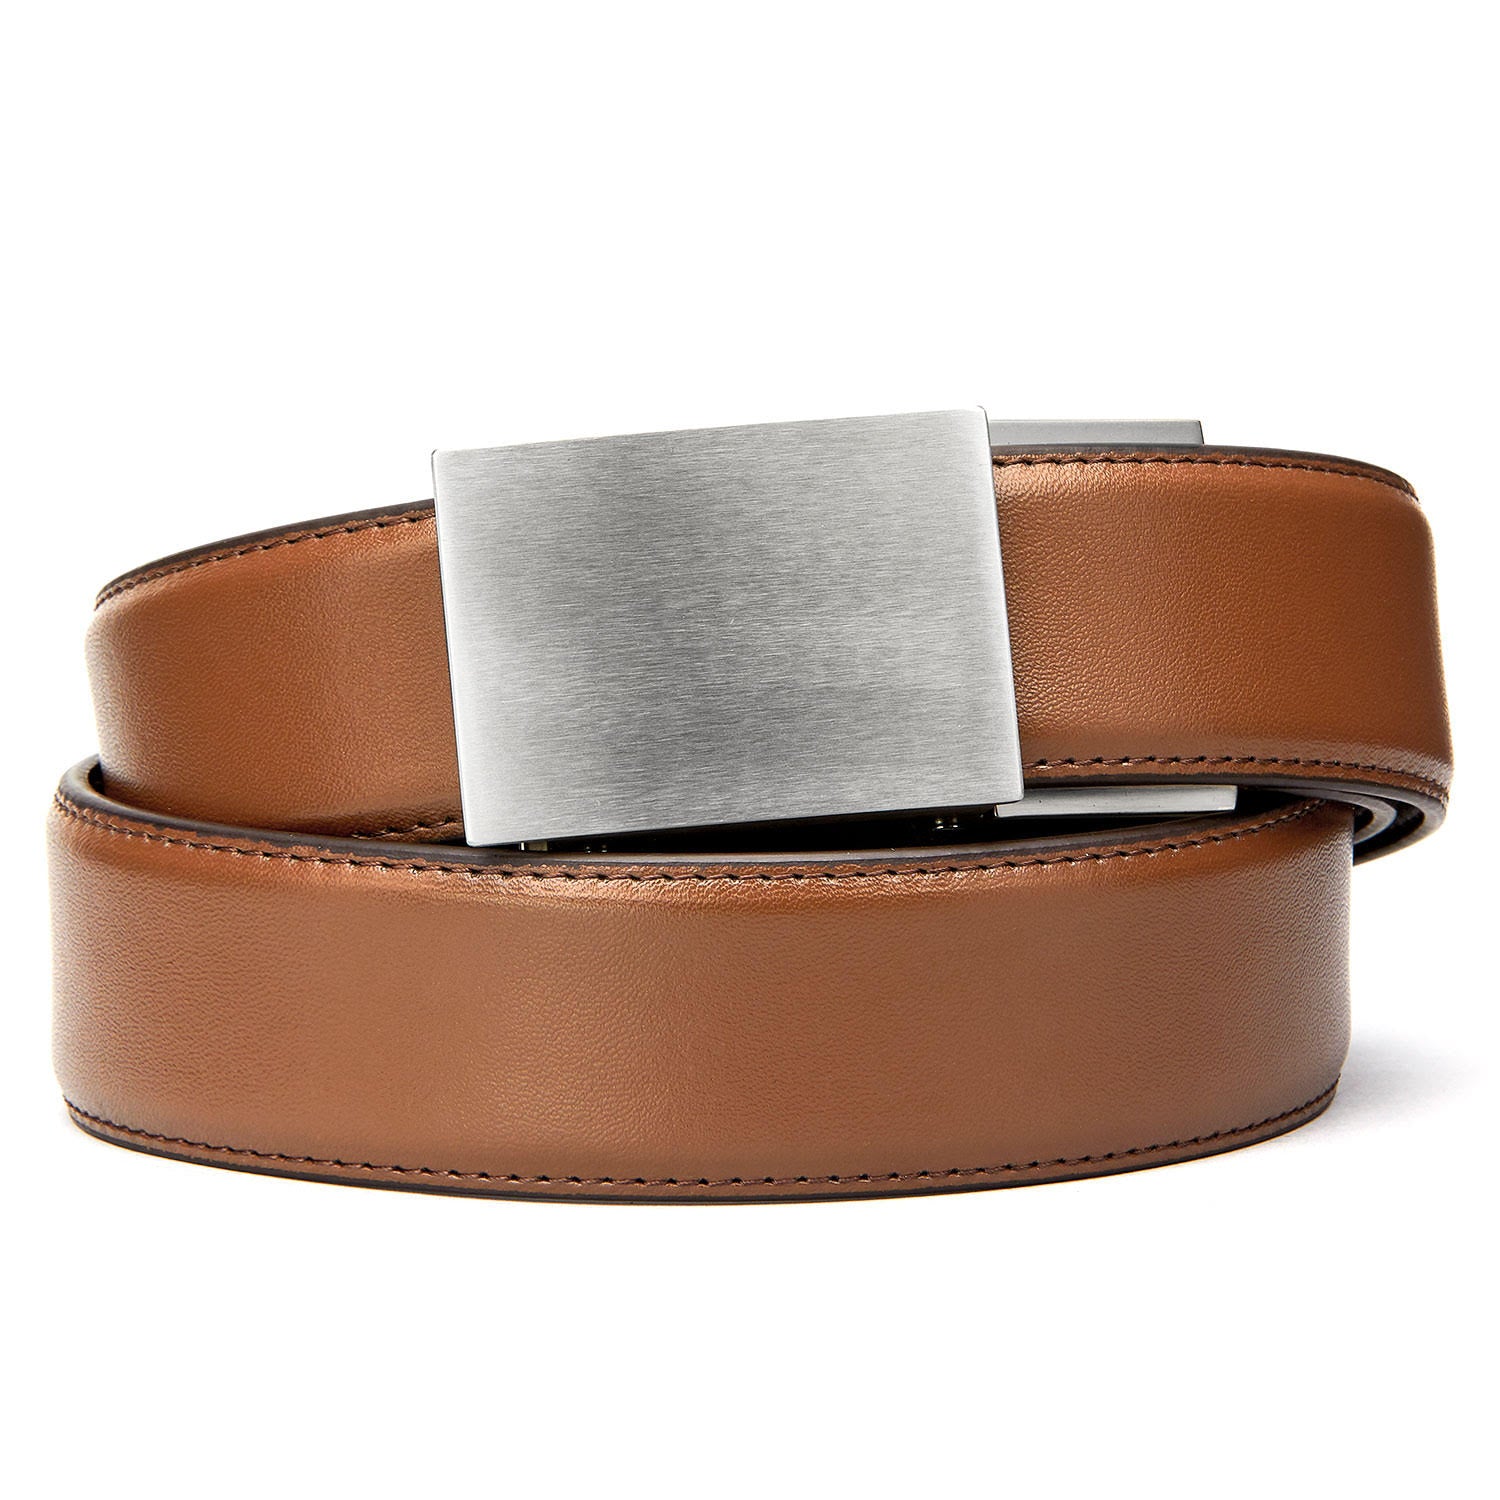 7 Belt buckles ideas  belt buckles, lv belt, luxury belts